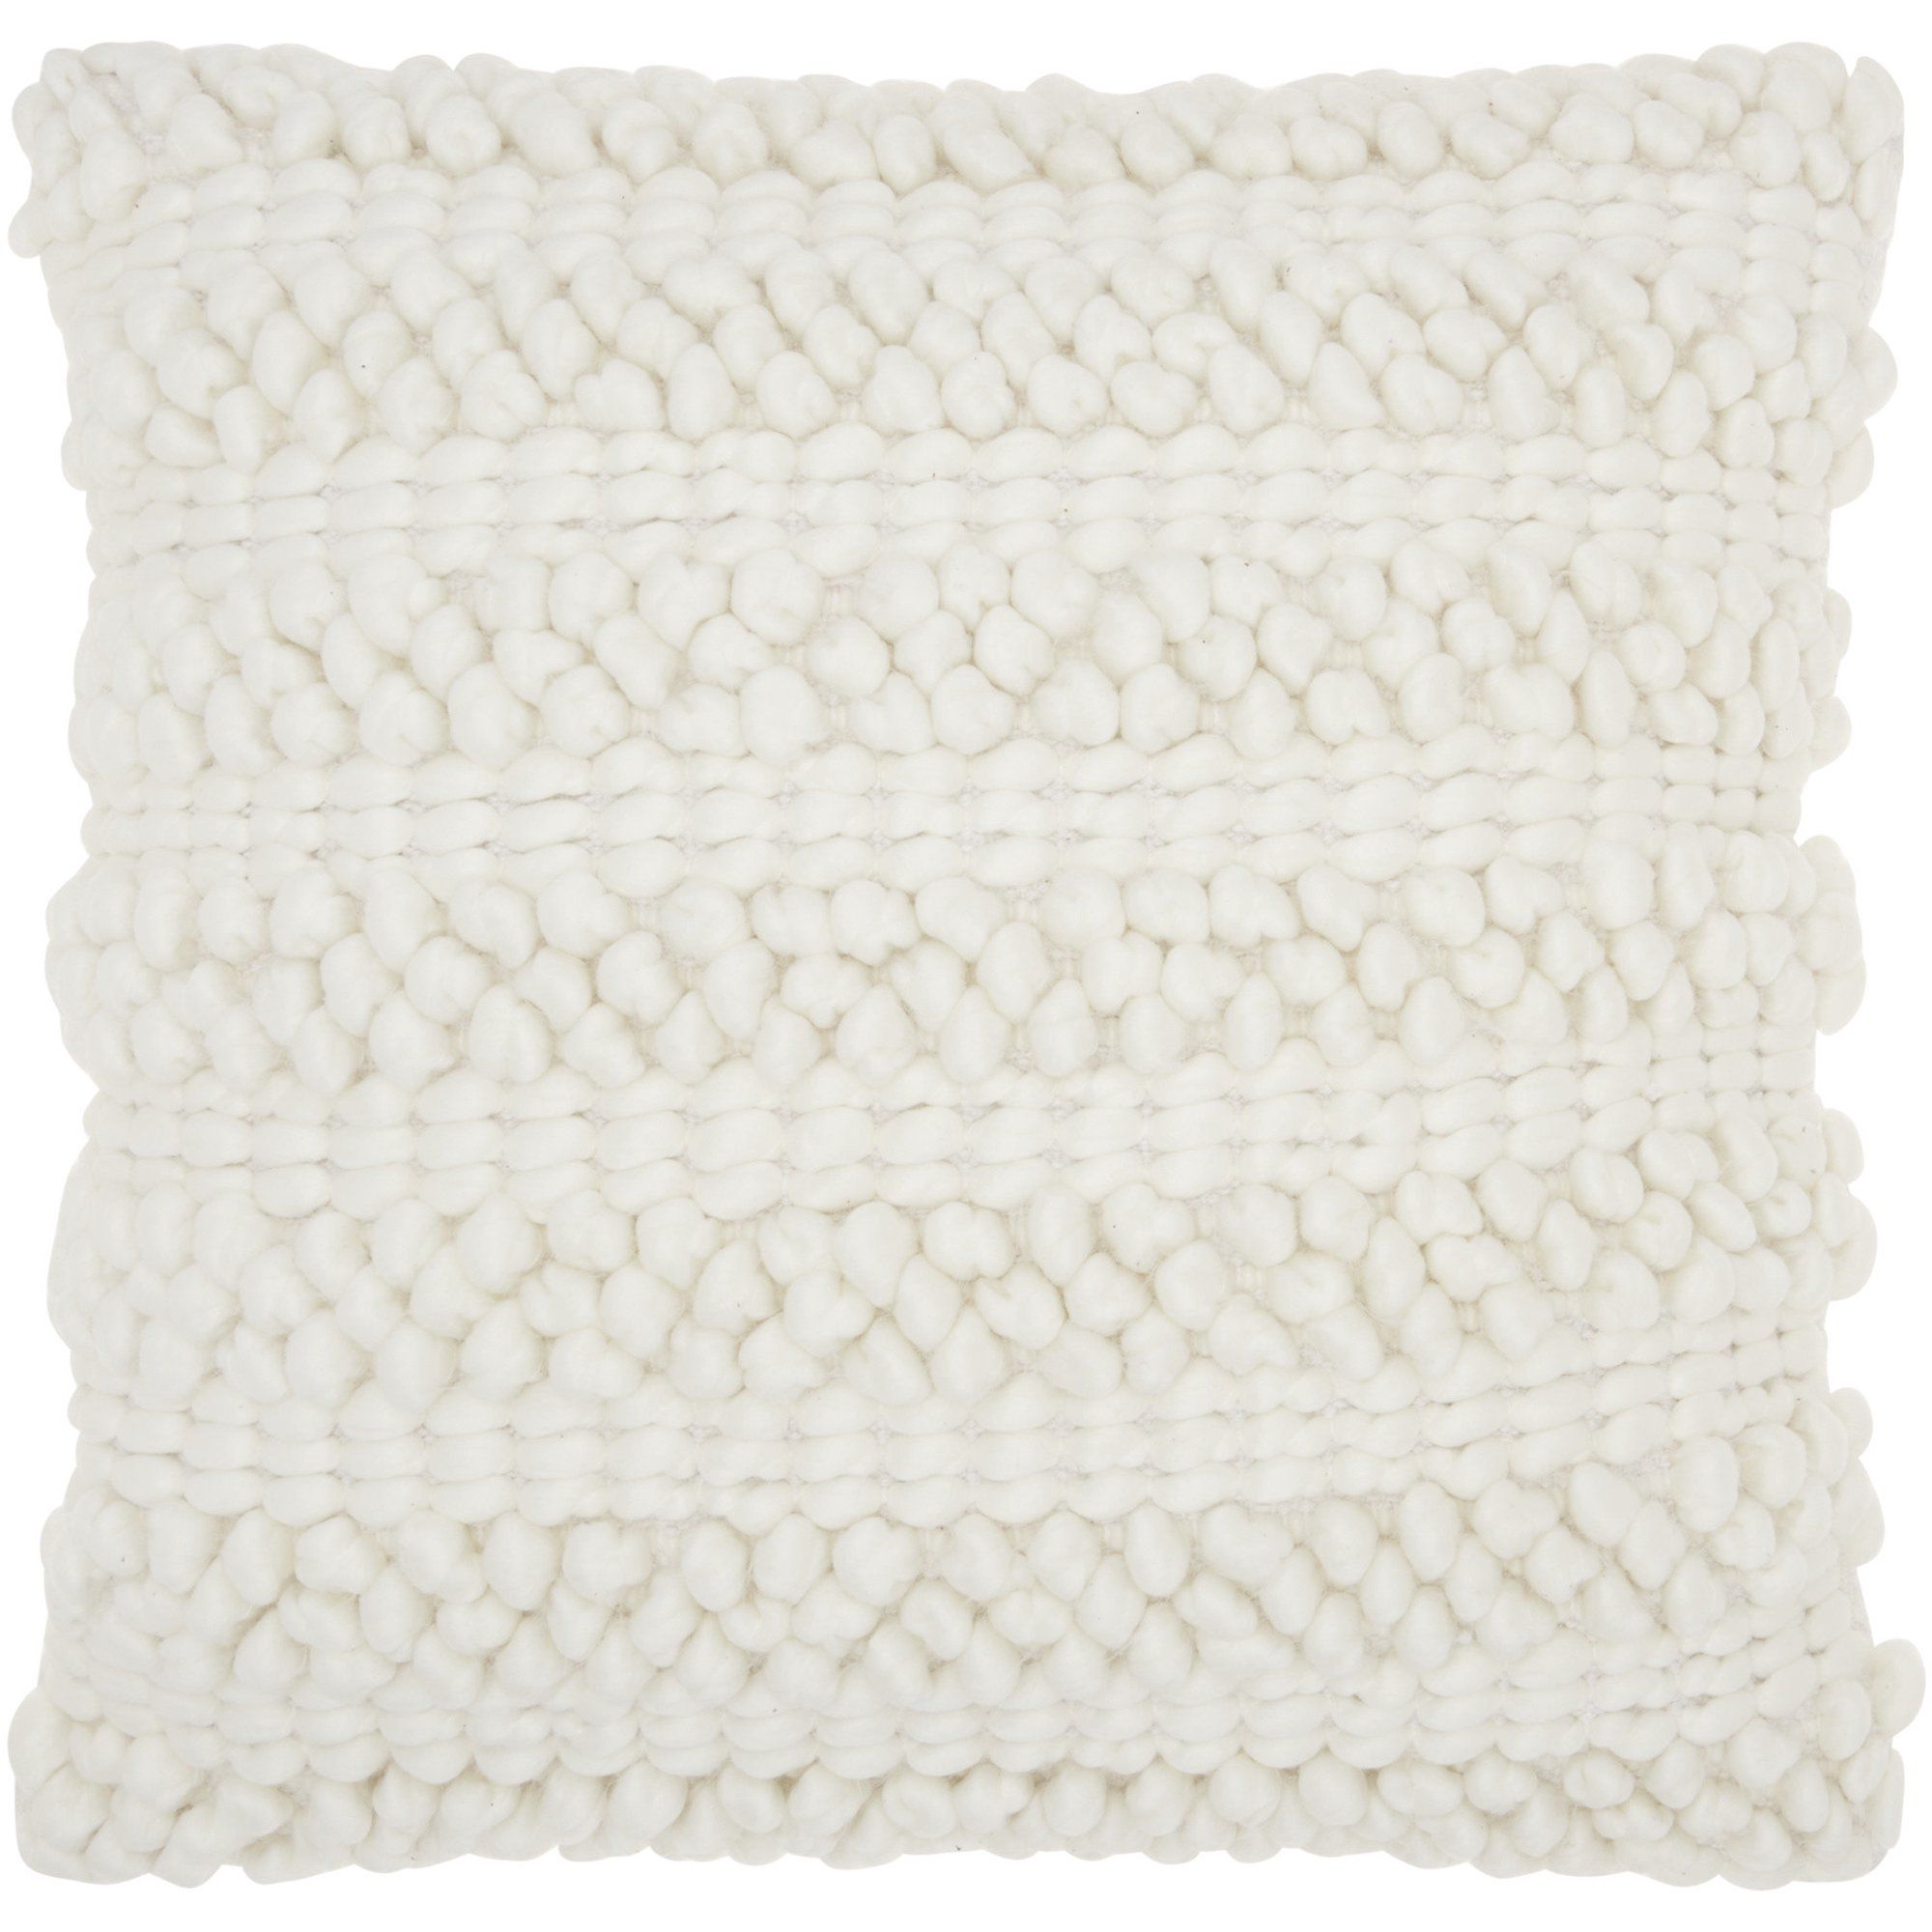 Nourison Life Styles Woven Stripes Decorative Throw Pillow, 20" x 20", White | Walmart (US)